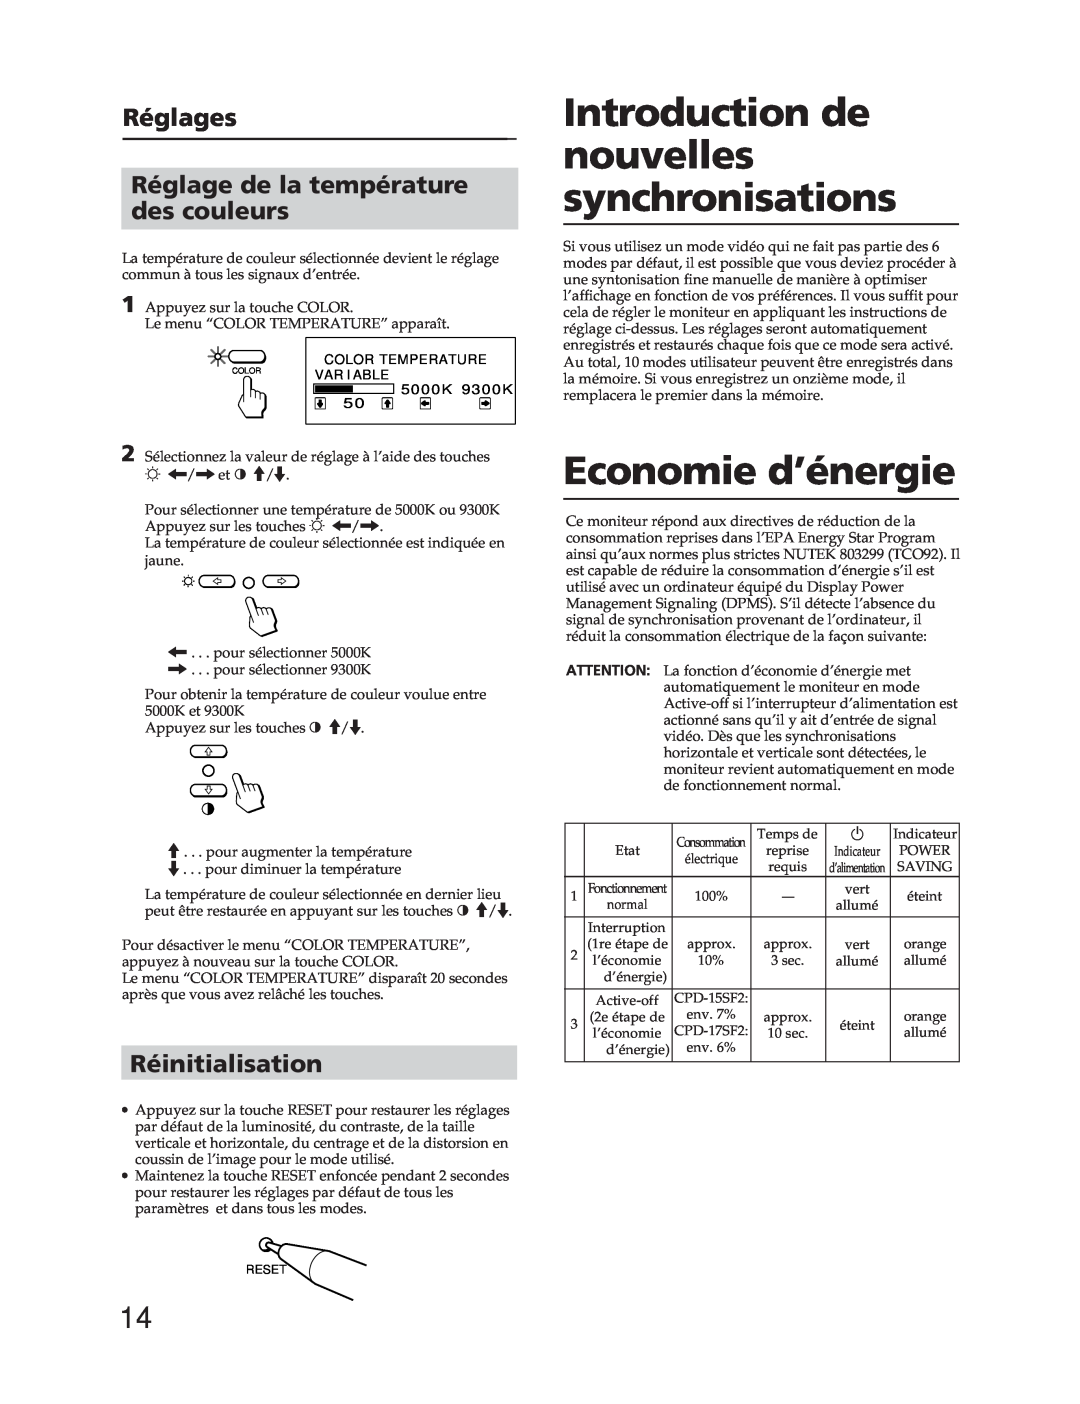 Sony CPD-17SF2, CPD-15SF2 manual Introduction de nouvelles synchronisations, Economie d’énergie, Réinitialisation 